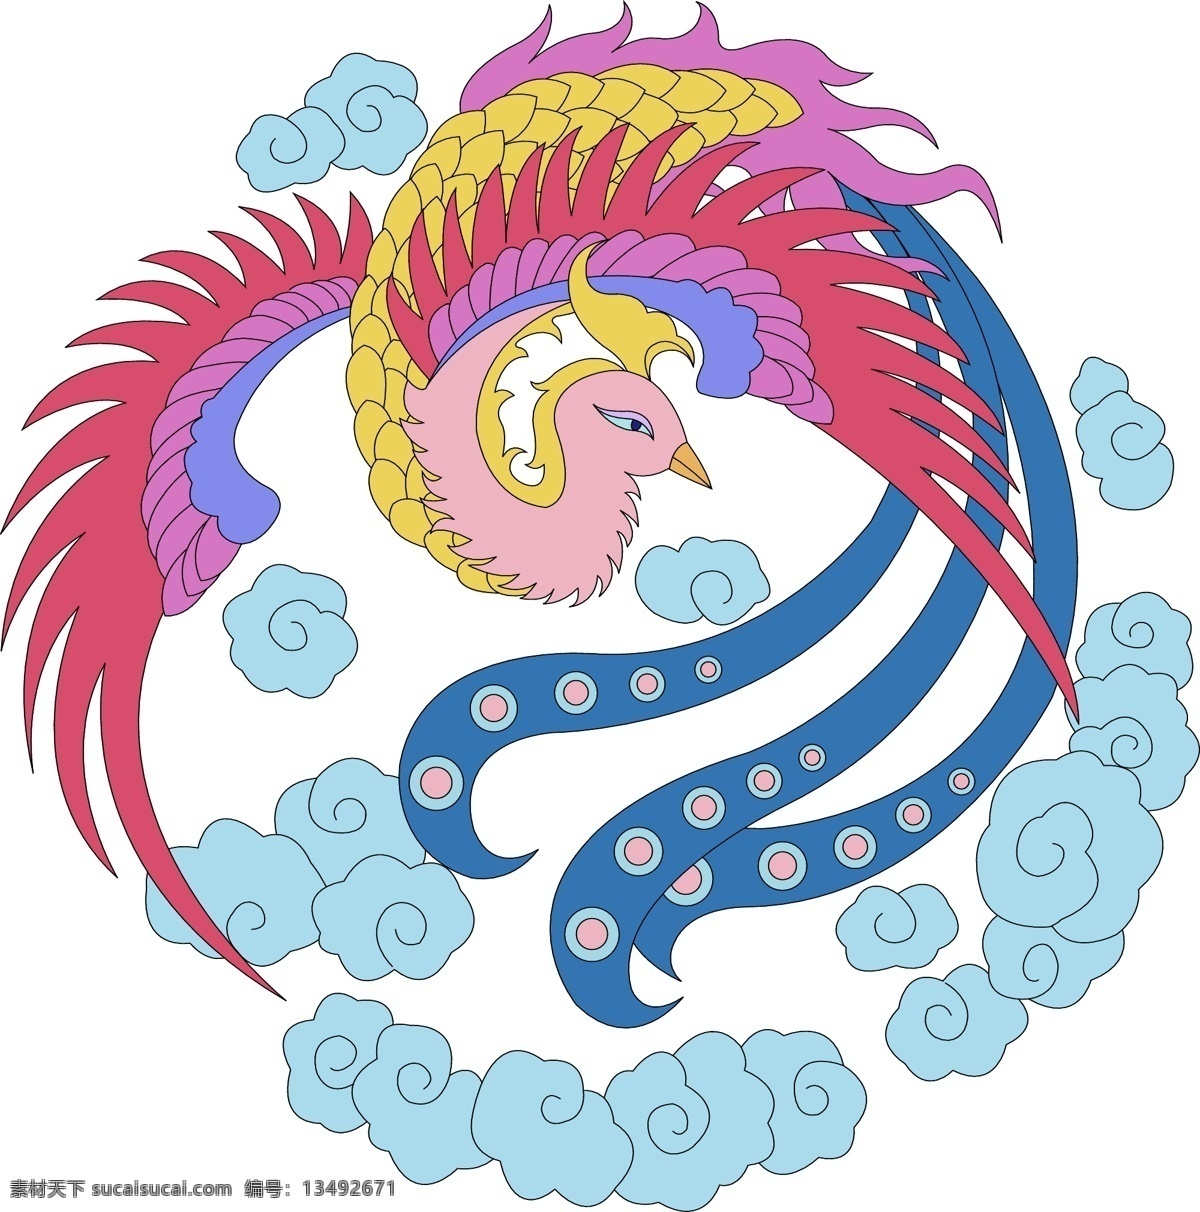 神鸟兽 彩色神鸟 天空蓝色云彩 粉色翅膀 中国 传统 龙凤 图案 传统文化 文化艺术 矢量